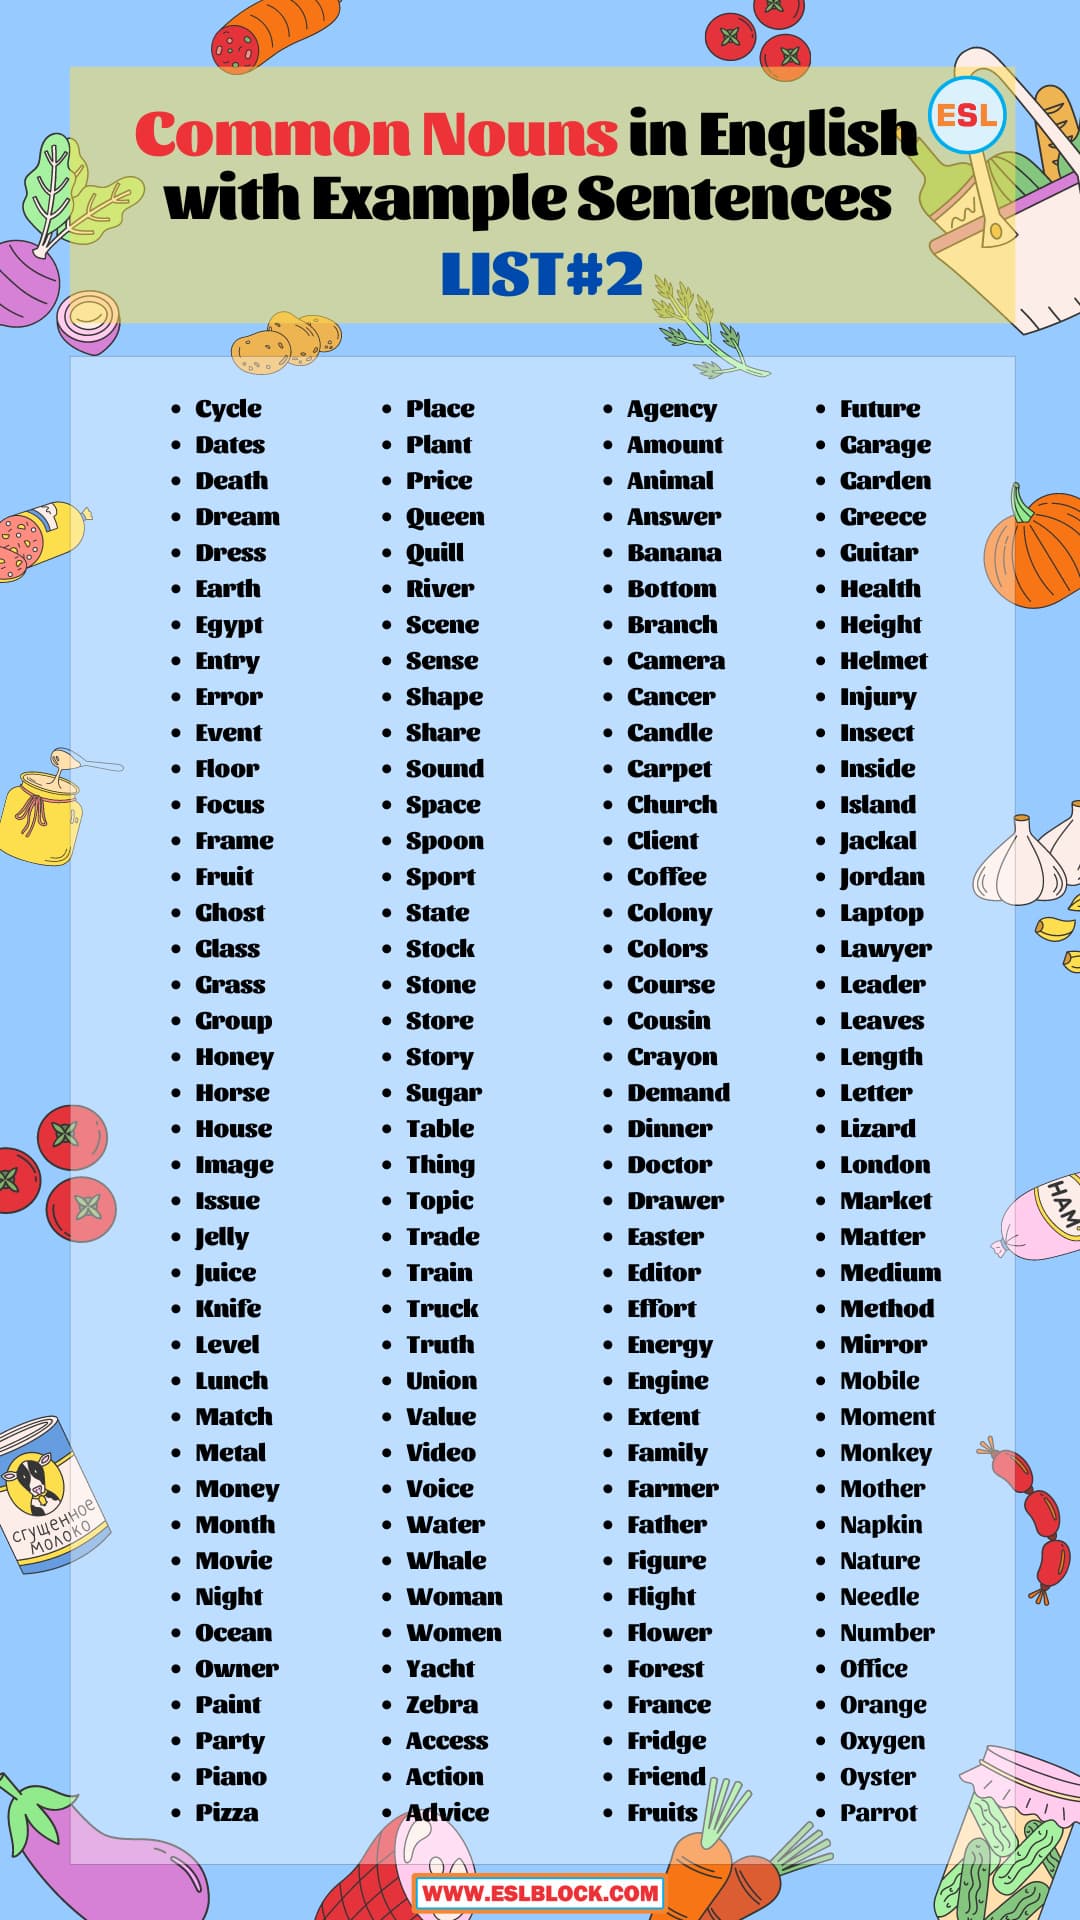 100 Example Sentences Using Common, All Common nouns, Common Nouns, Common nouns list, Common Nouns Vocabulary, Common Nouns with Example Sentences, List of Common nouns, Types of Nouns, Types of Nouns with Example Sentences, What are Concrete Nouns, What are Nouns, What are the types of Nouns, What is a Noun